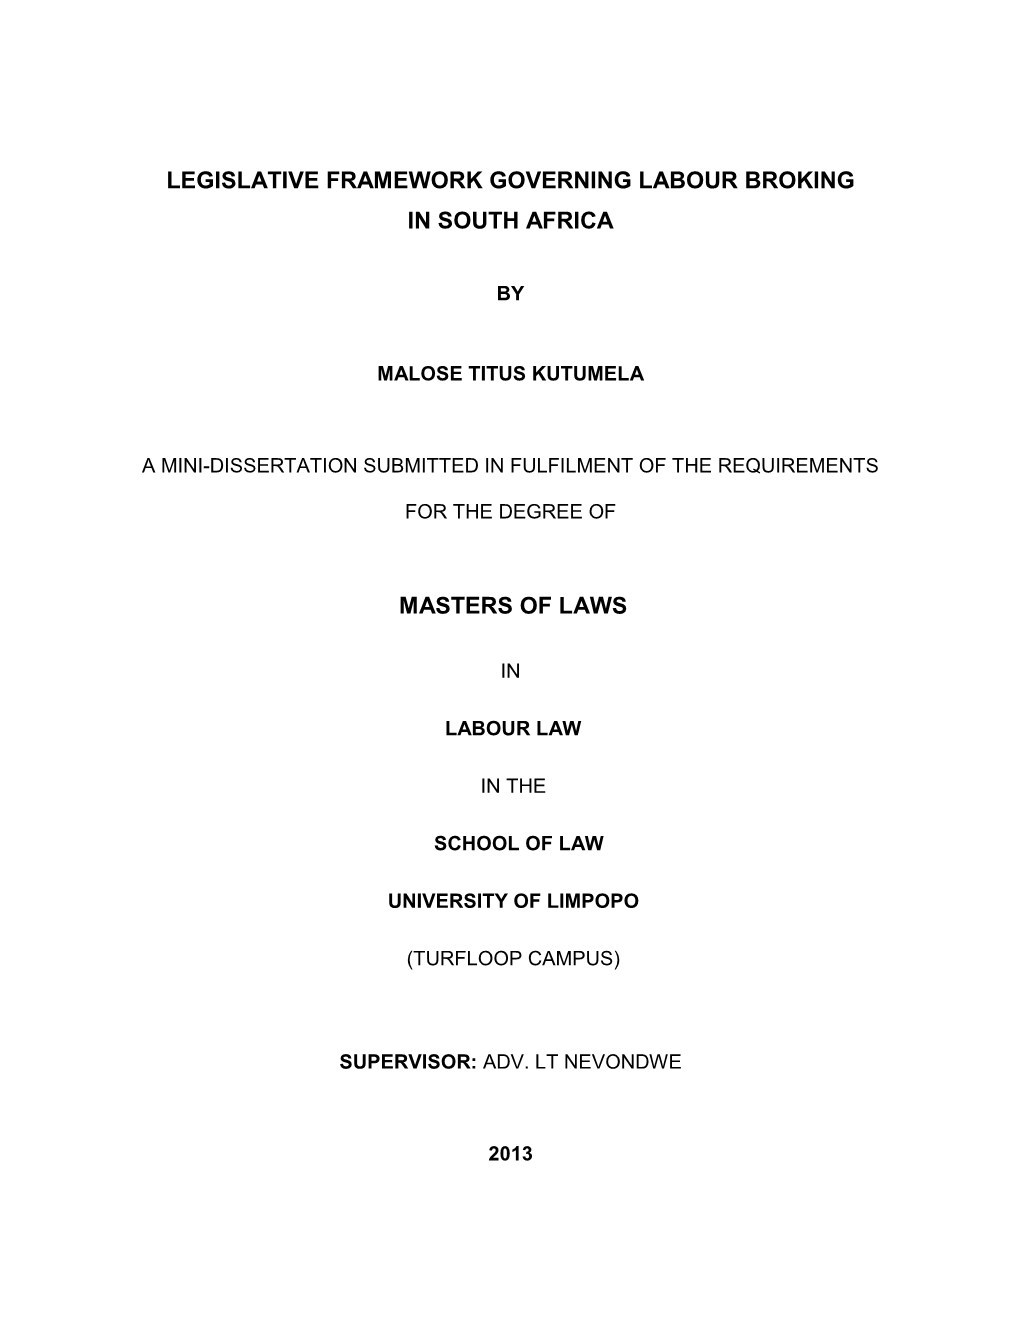 Legislative Framework Governing Labour Broking in South Africa